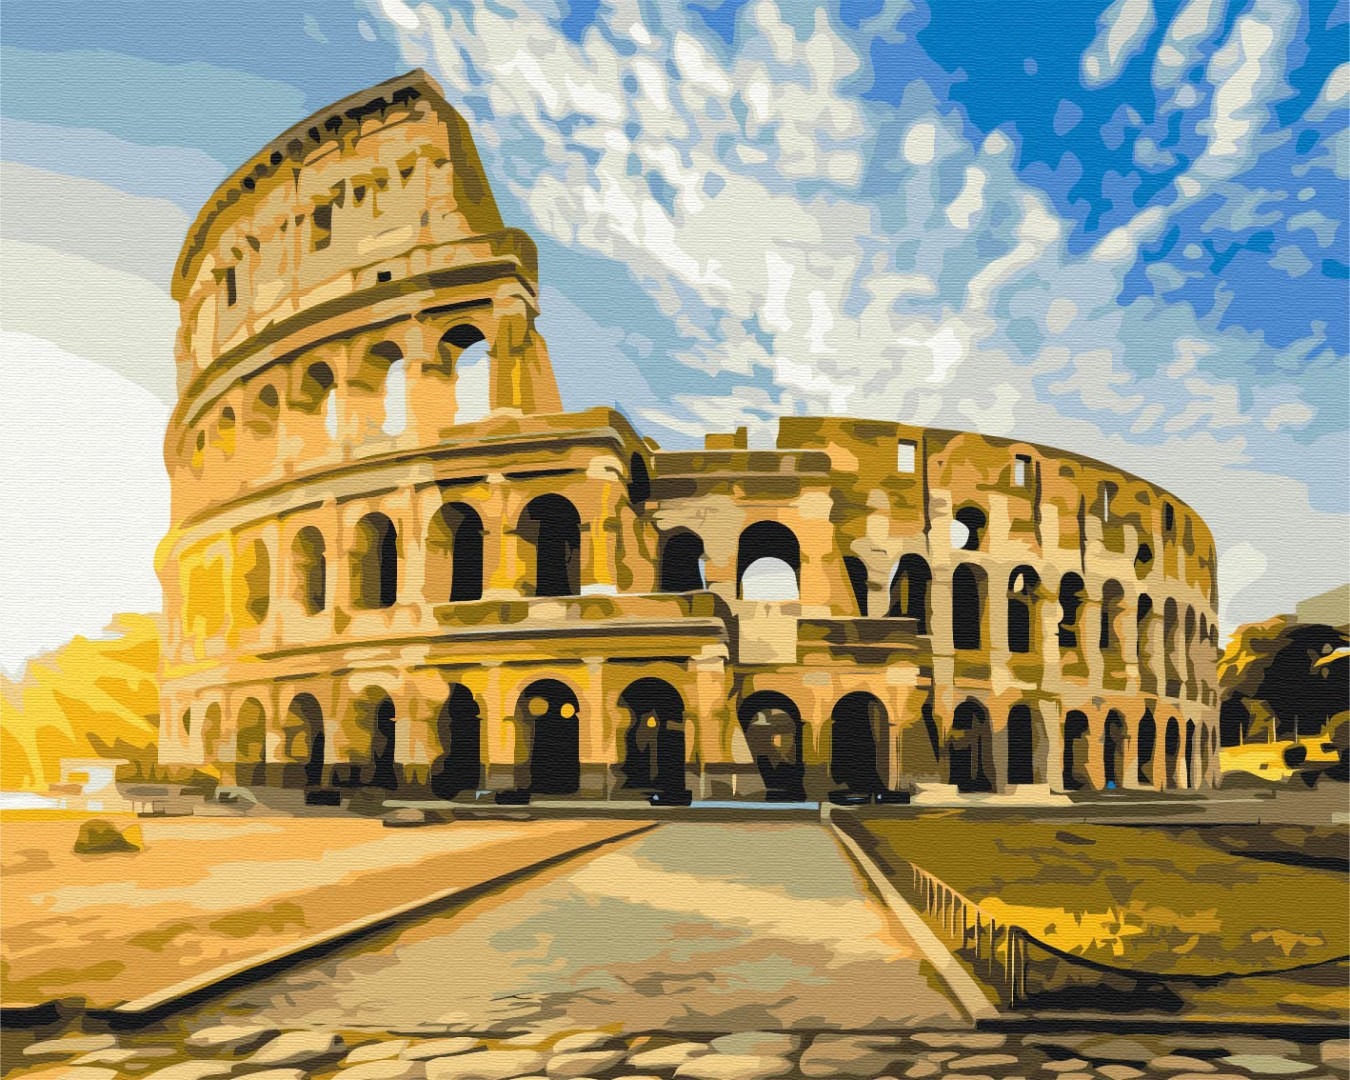 Mal efter tal - Colosseum at sunrise - byer